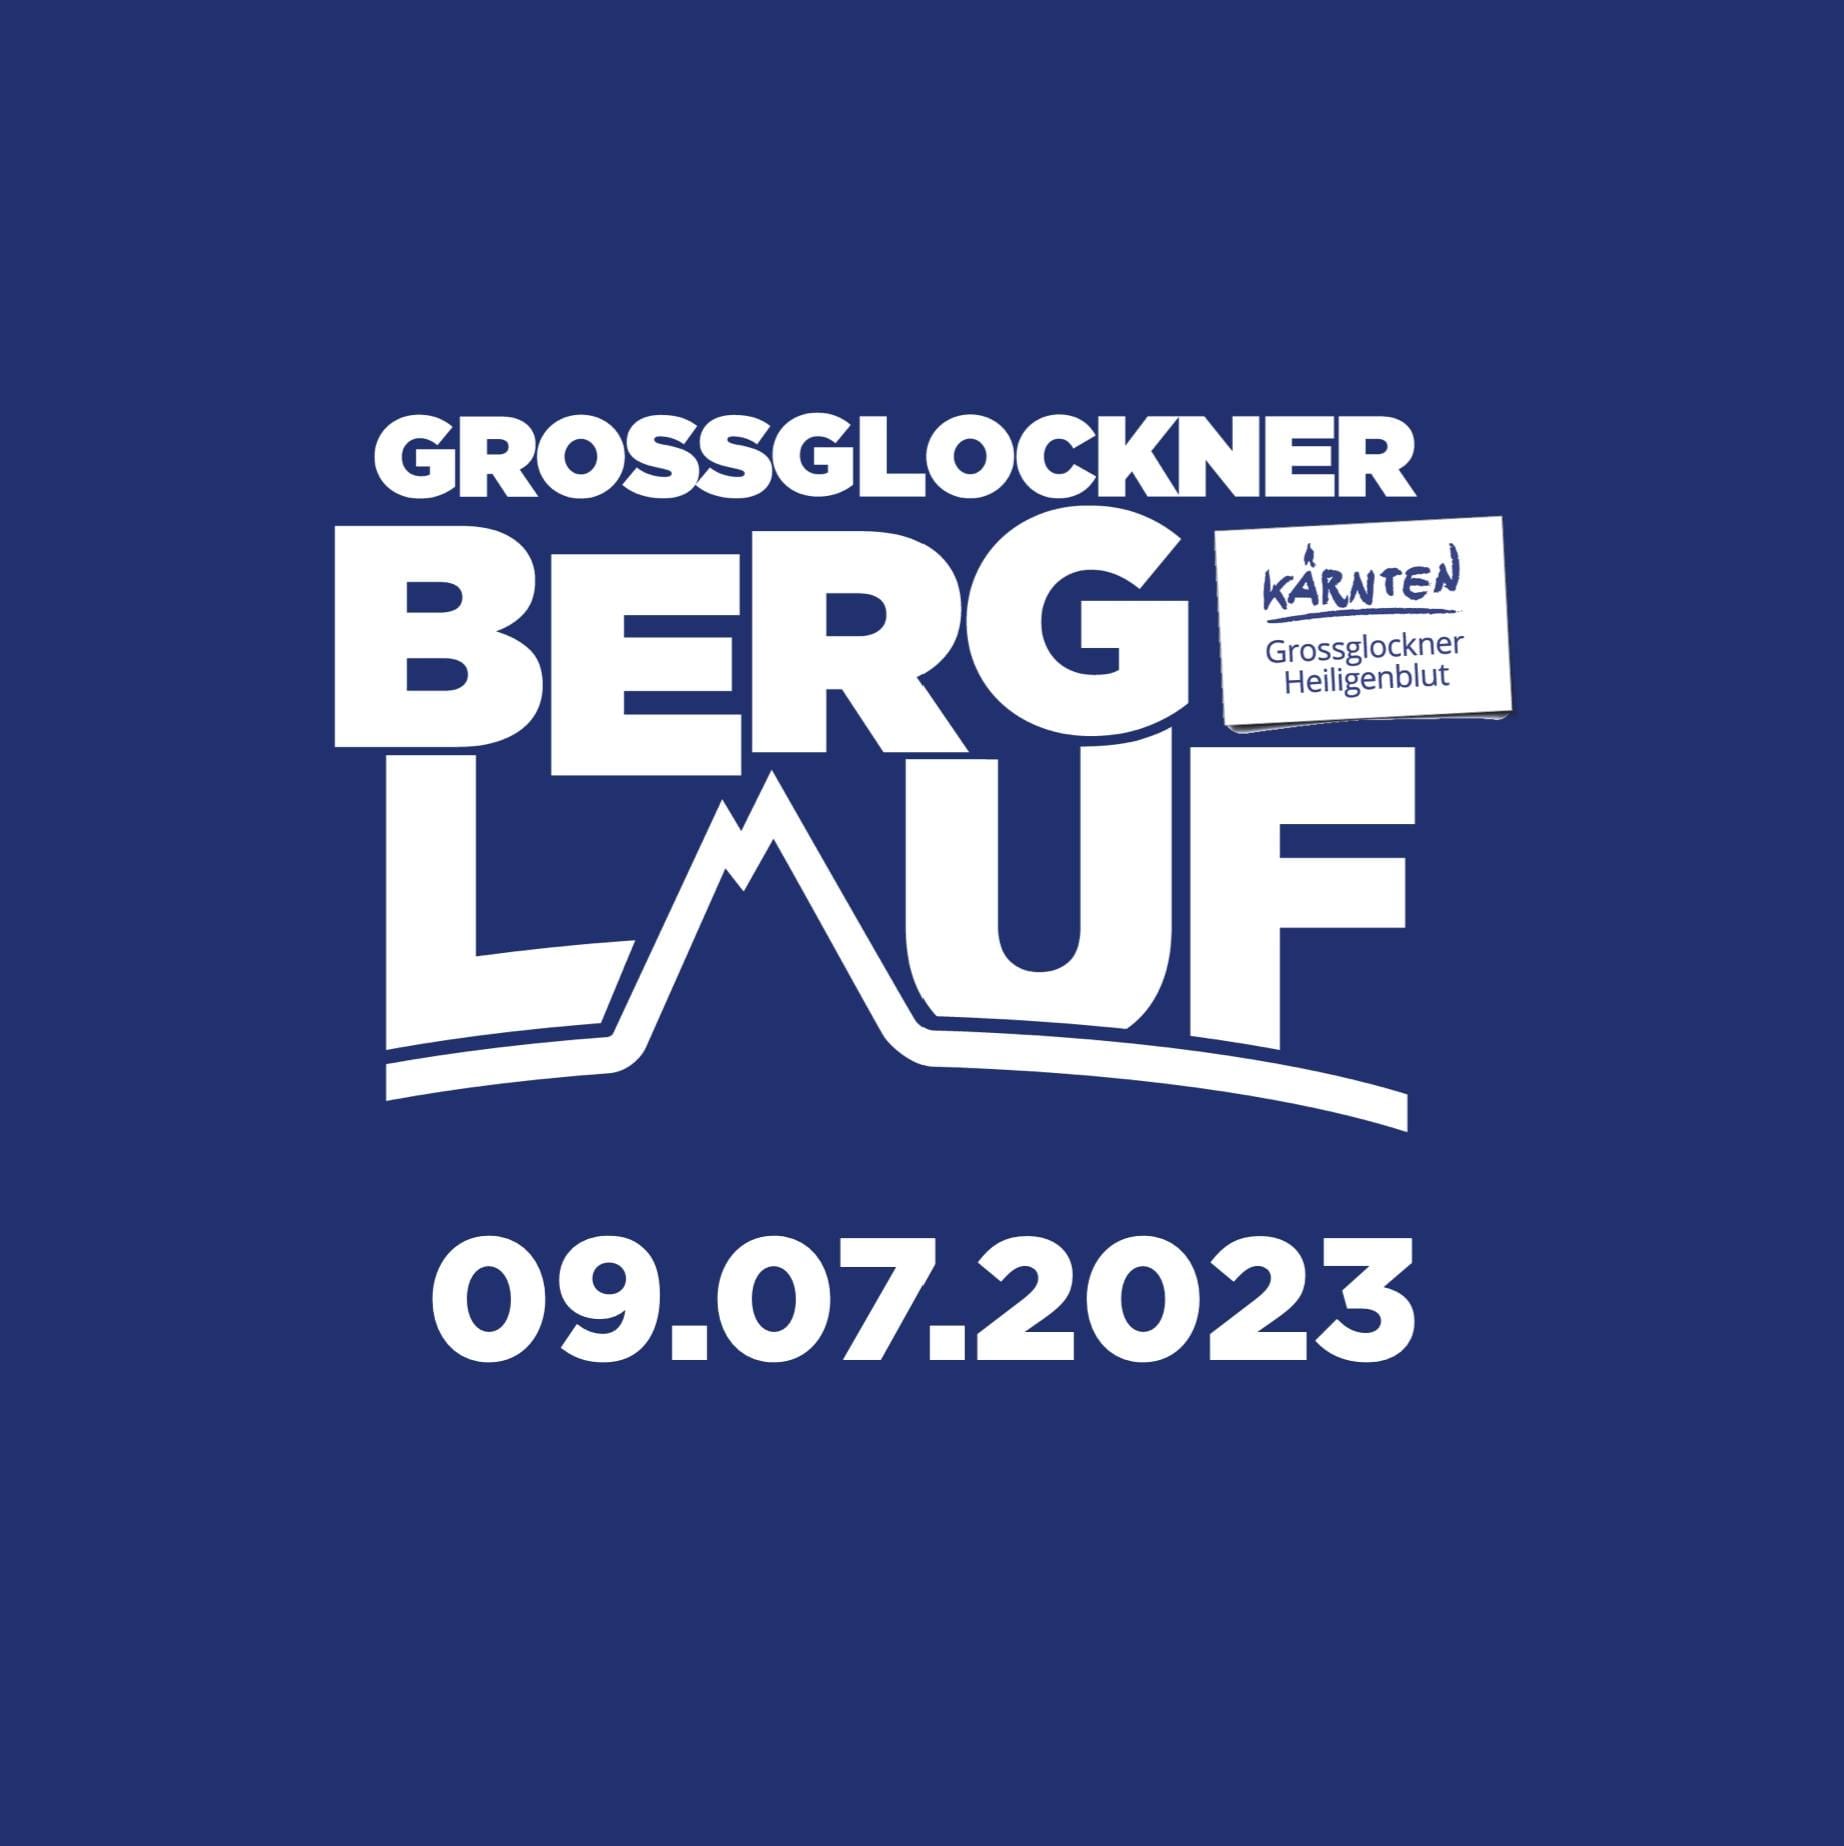 Grossglockner Berglauf 2023